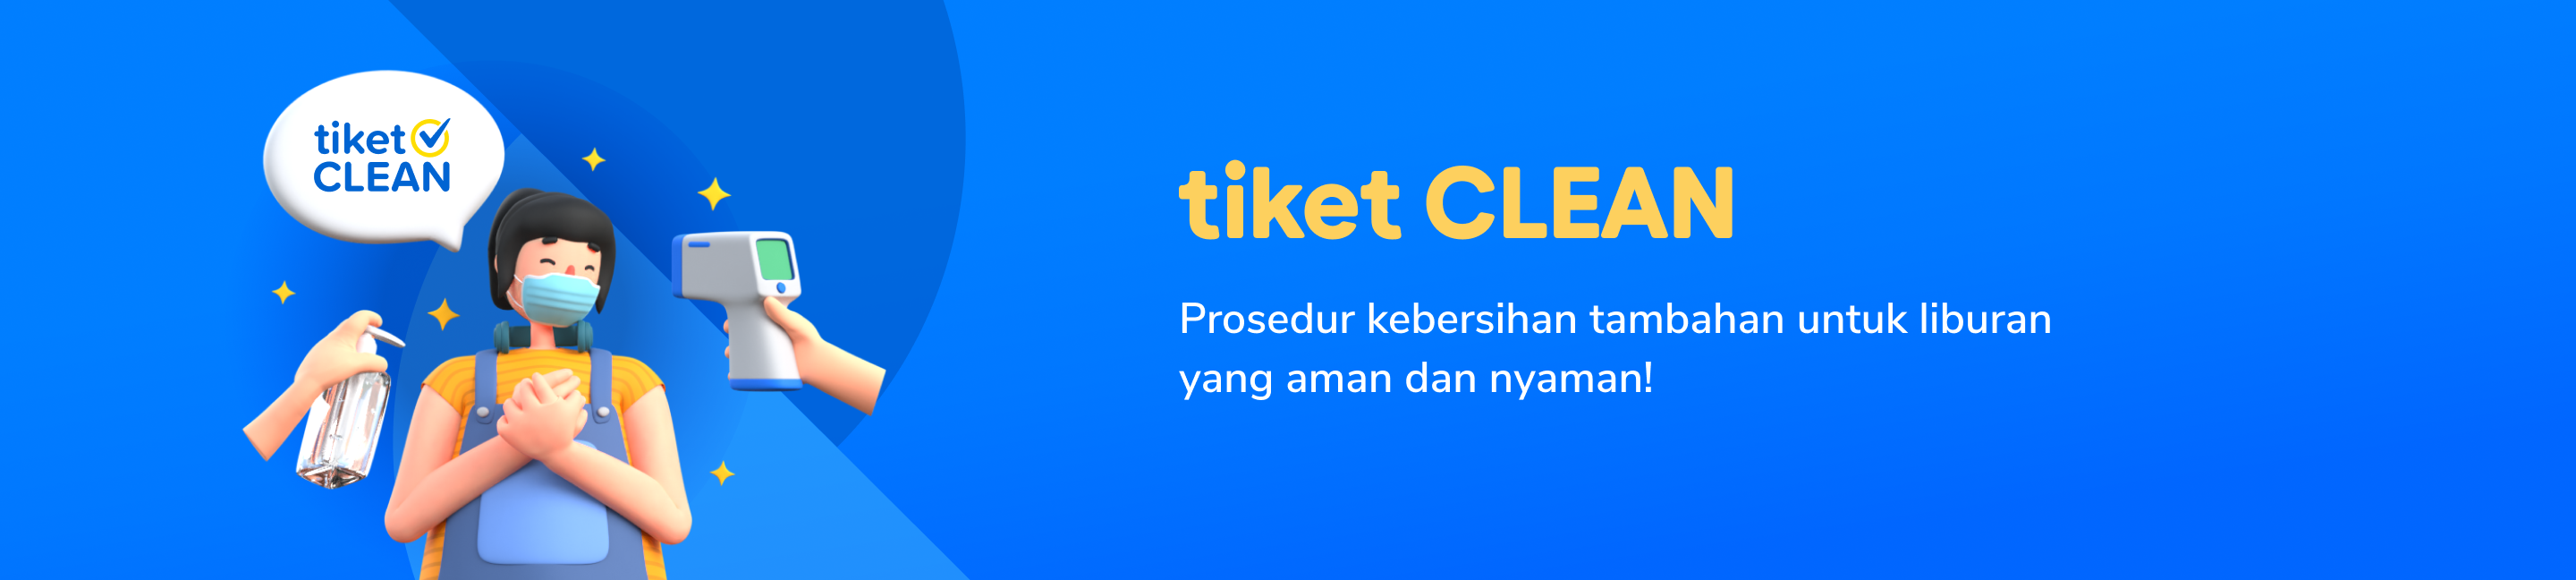 Liburan makin aman pakai tiket CLEAN dari tiket.com